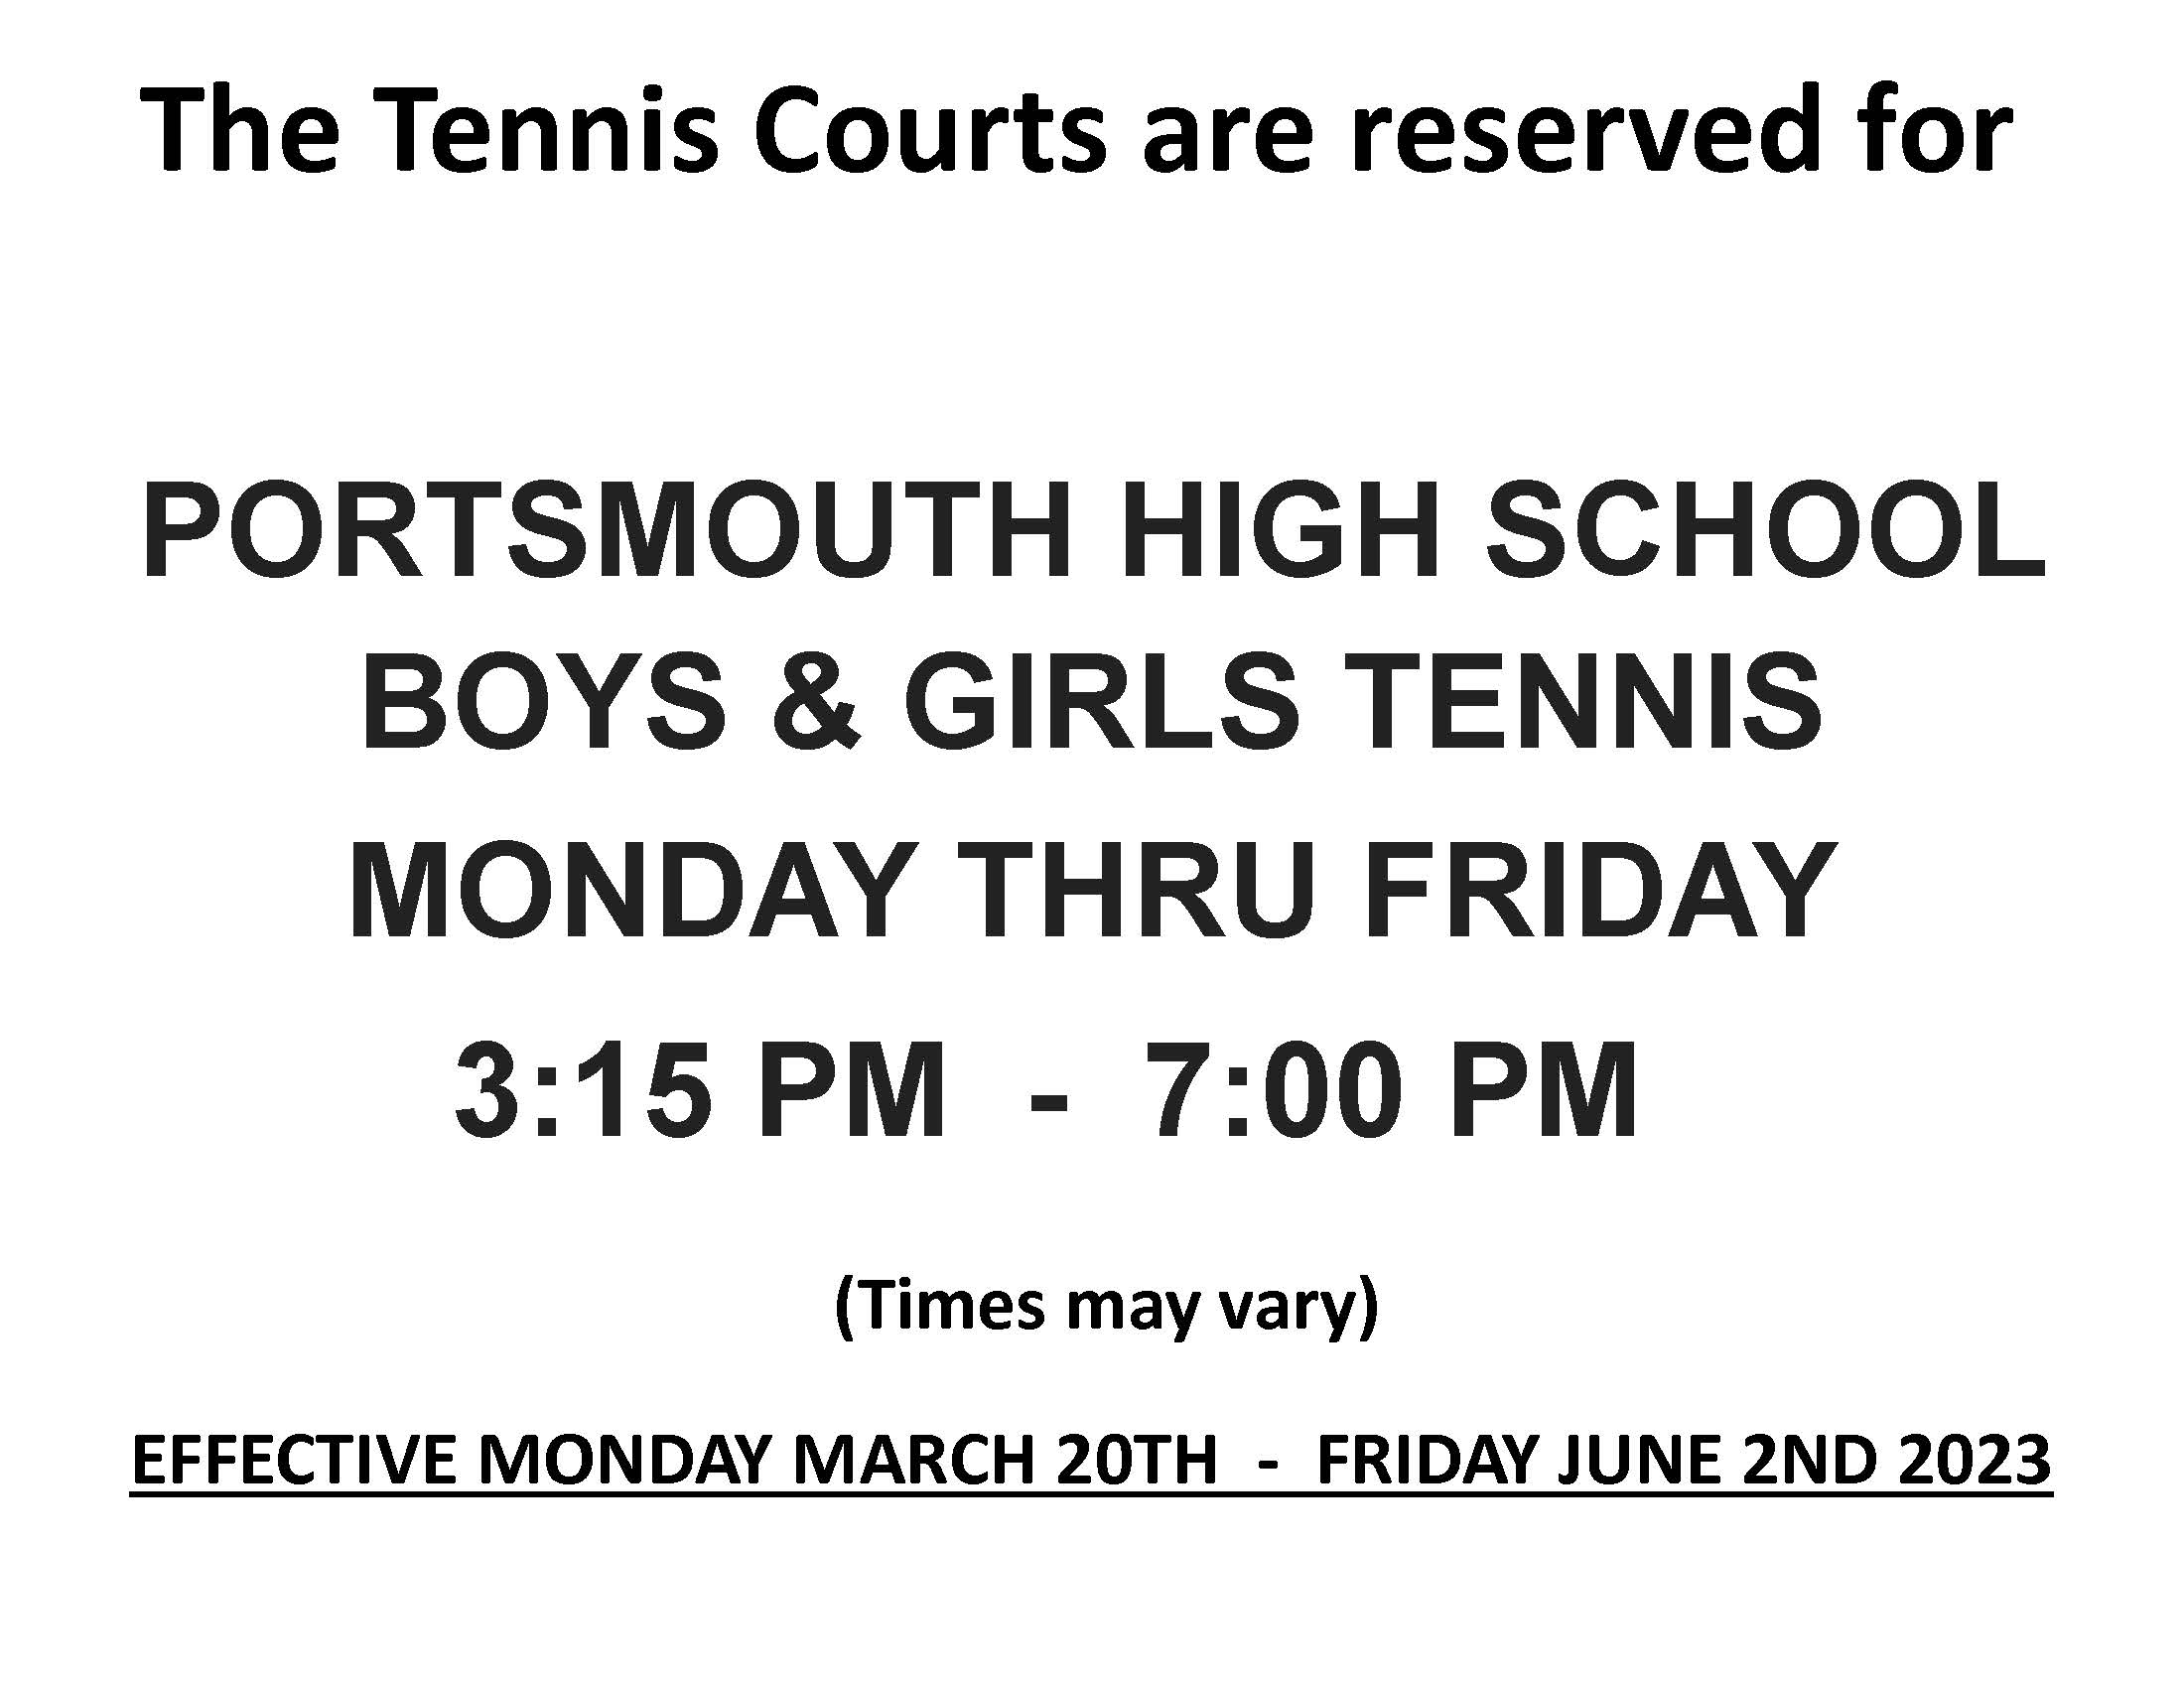 High School Tennis hours